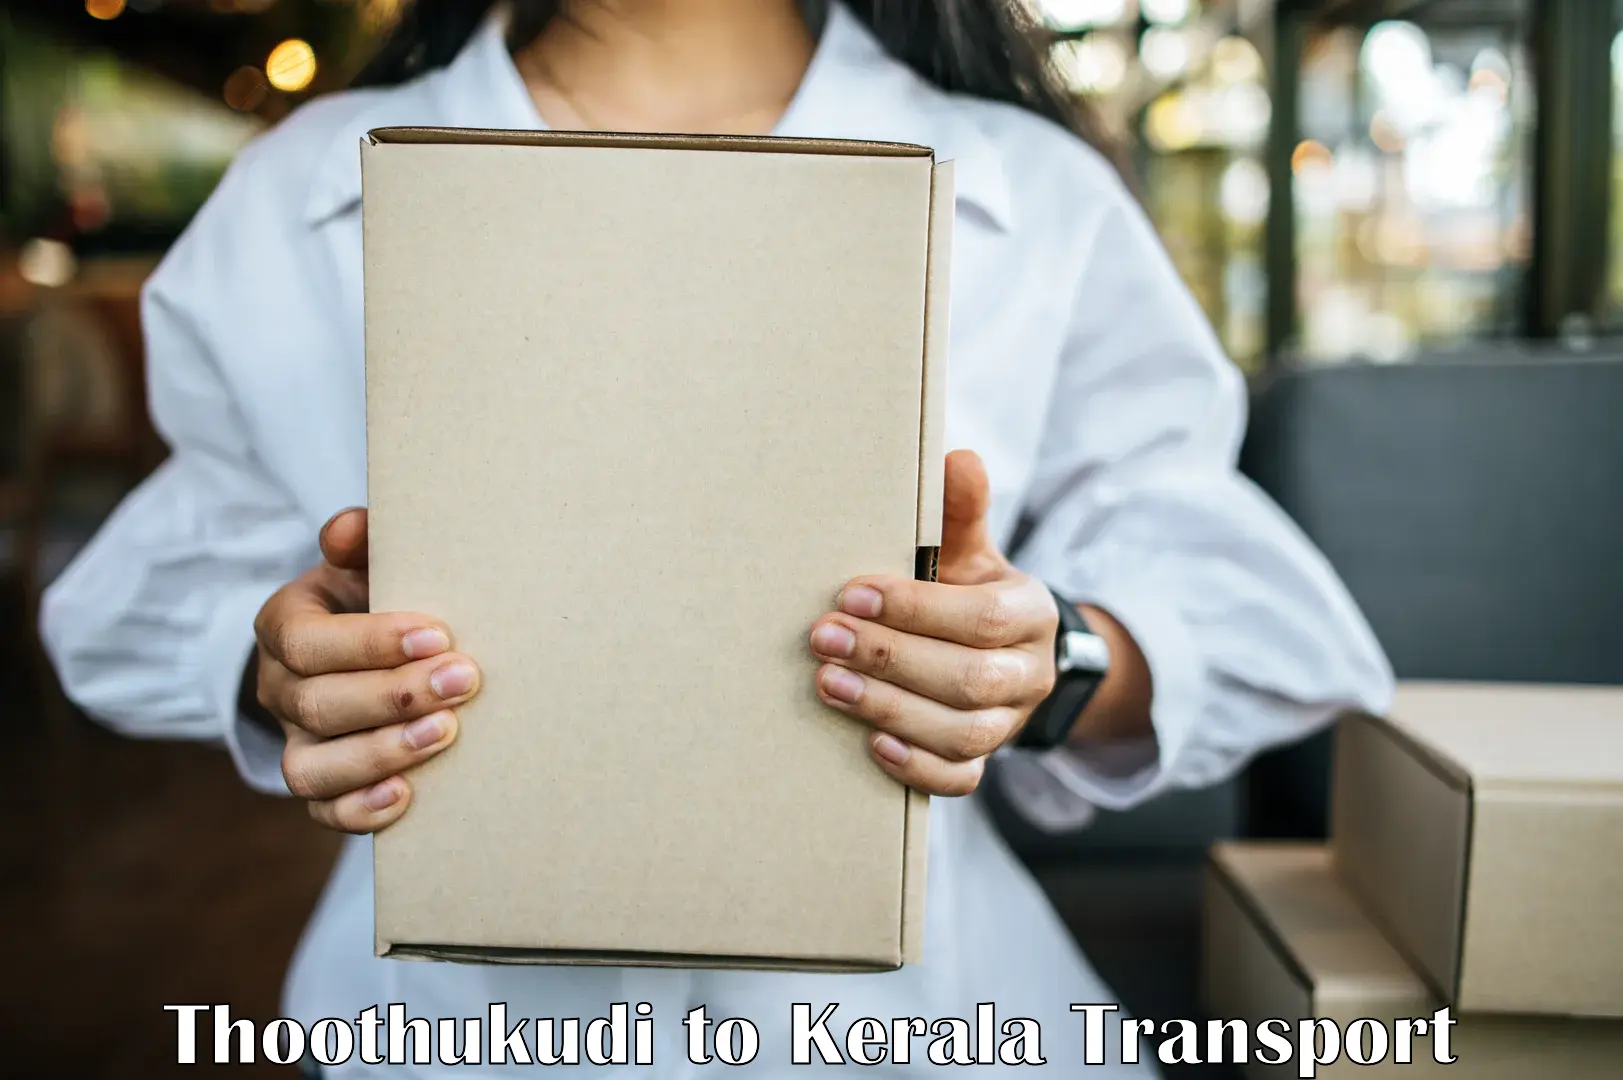 Domestic goods transportation services Thoothukudi to Kuthiathode